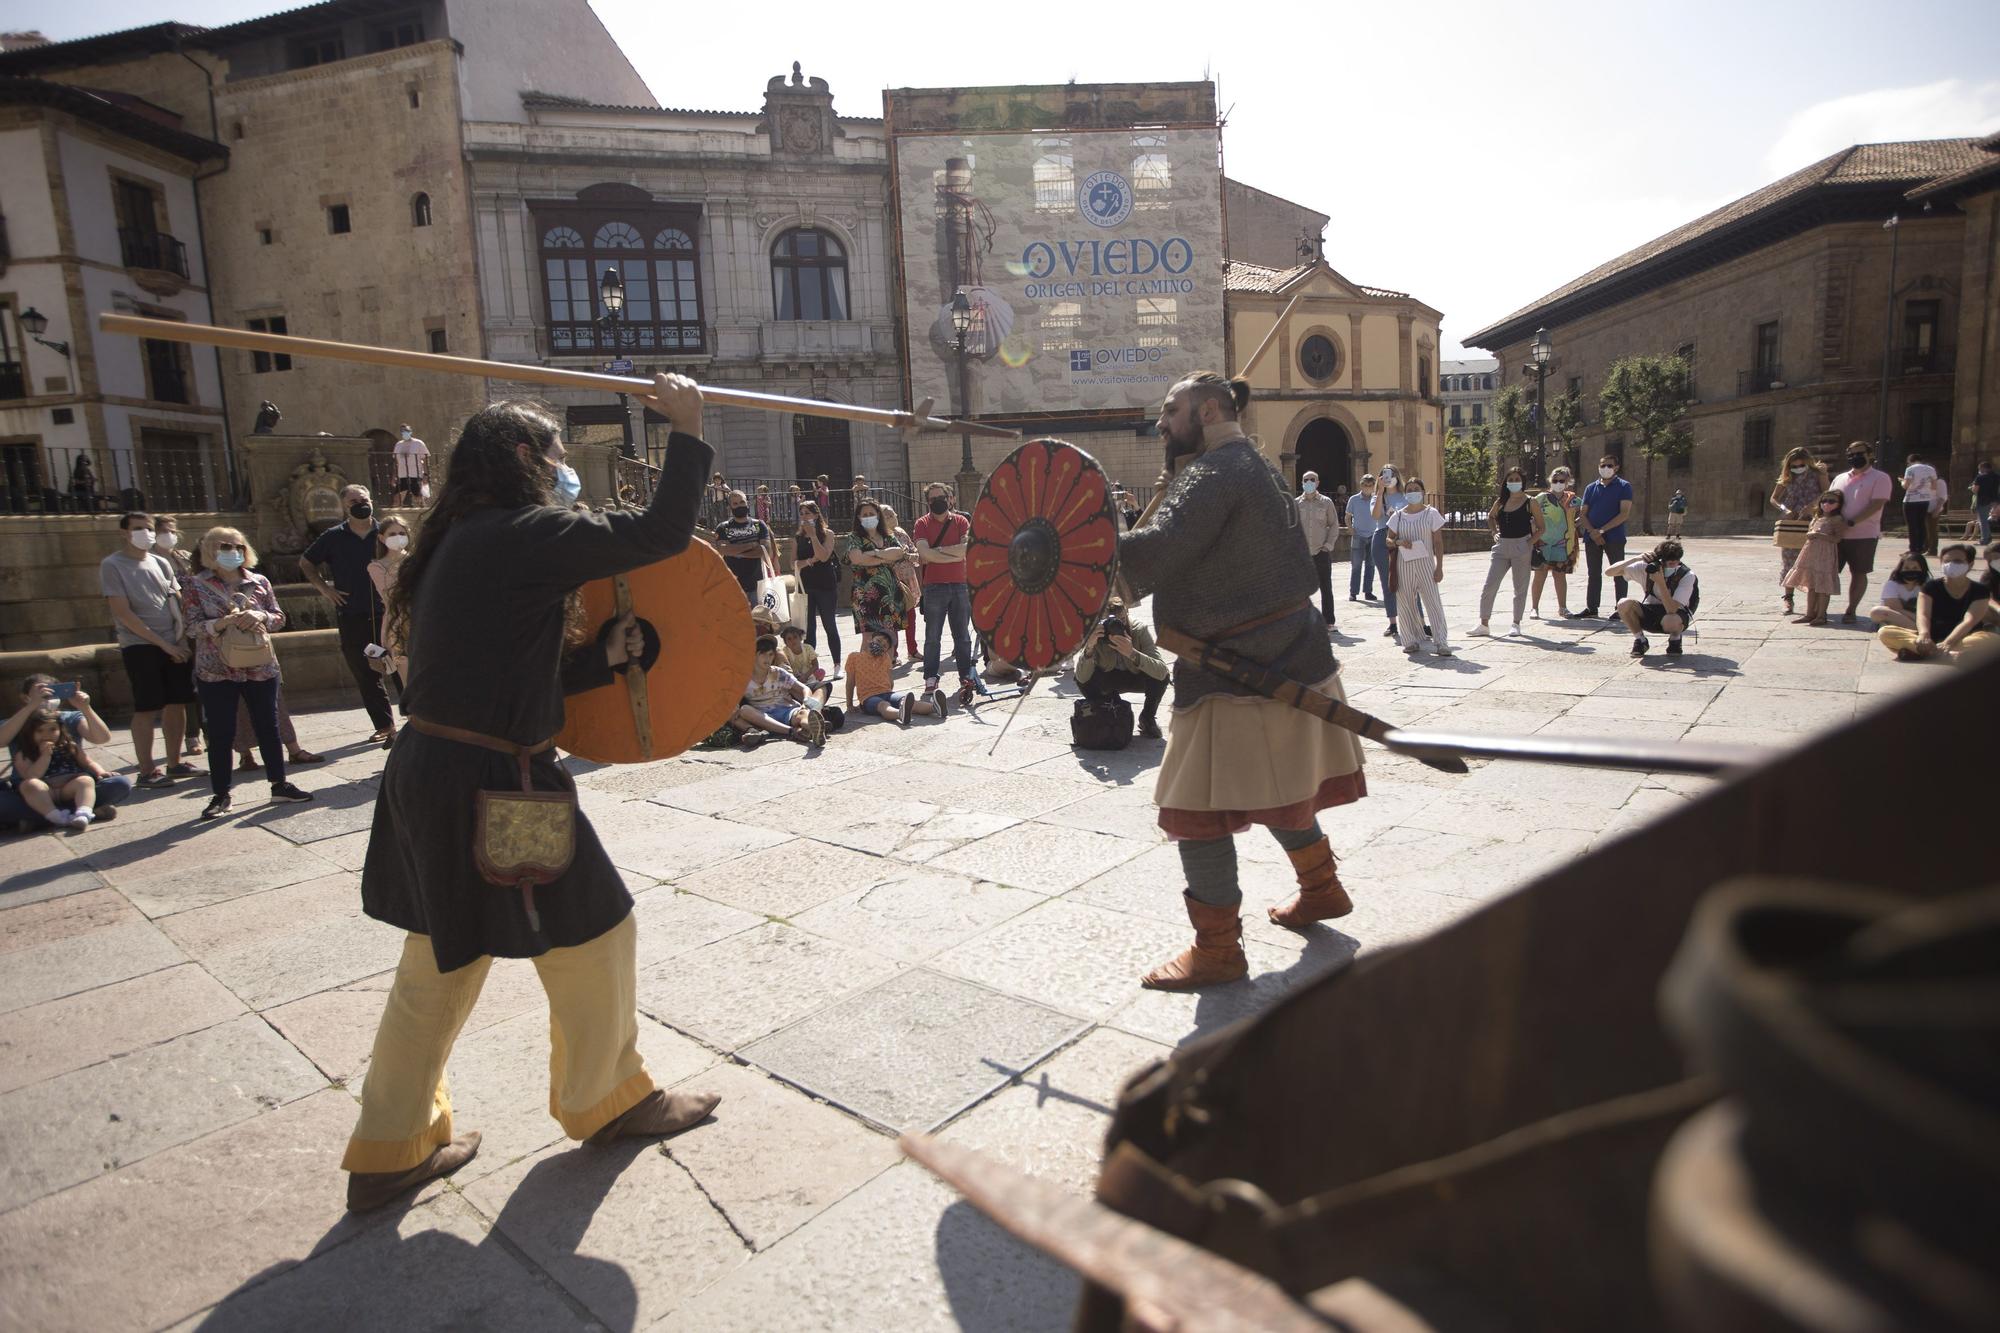 Duelo de espadas a los pies de la Catedral de Oviedo